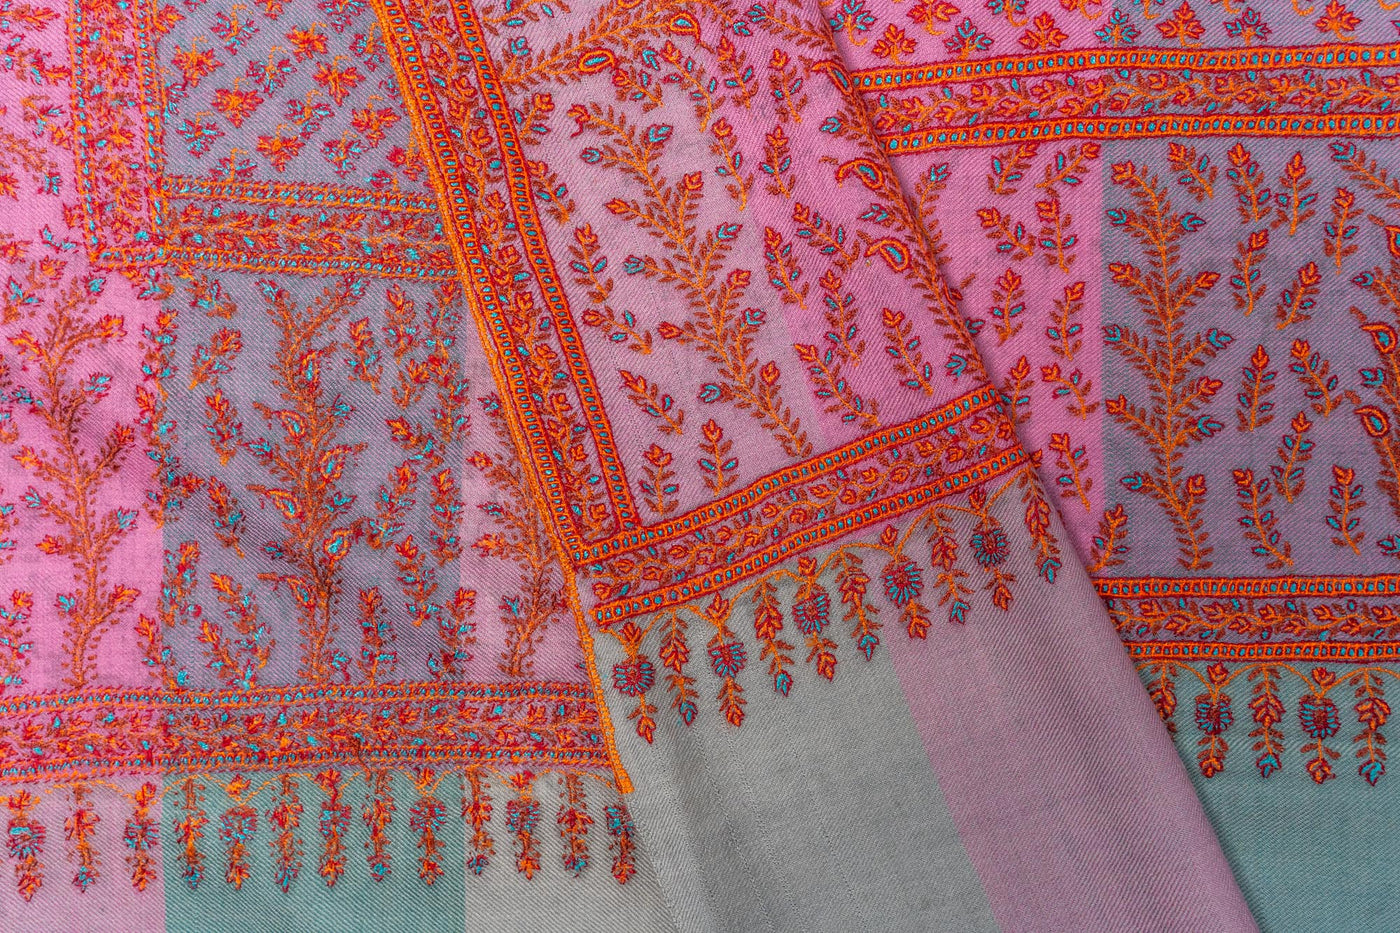 Gulzar-e-Kashmir Sozni: Pure Pashmina Jamawar Shawl with Sozni Hand-Embroidery